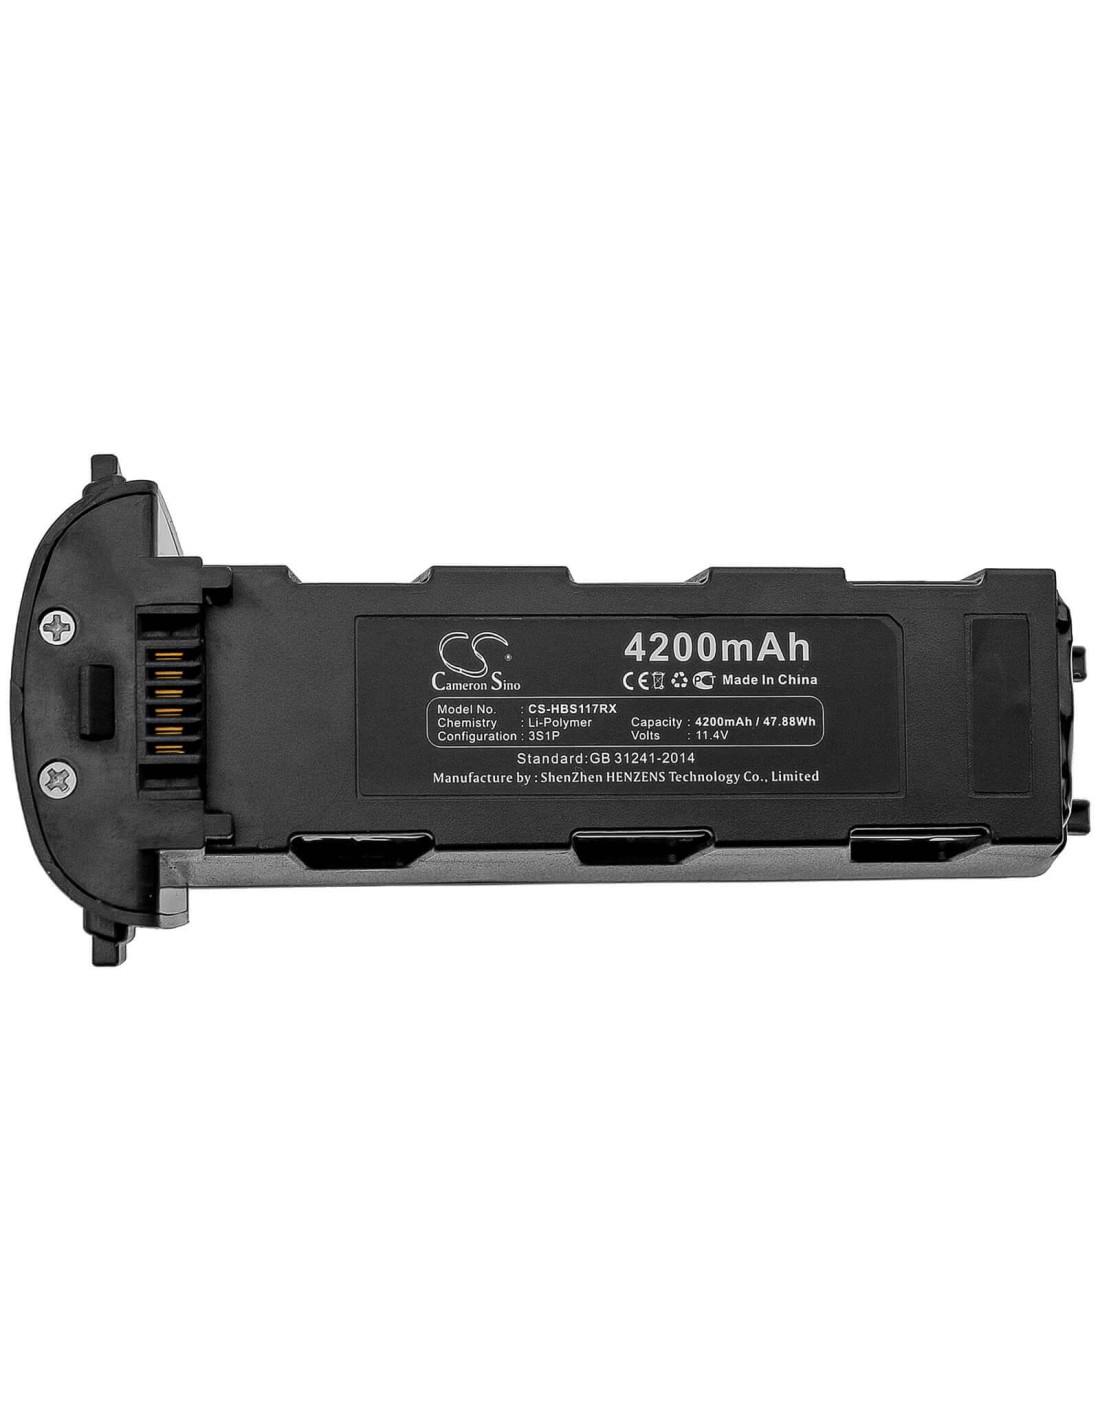 Battery for Hubsan, Zino, H117s, Zino 11.4V, 4200mAh - 47.88Wh